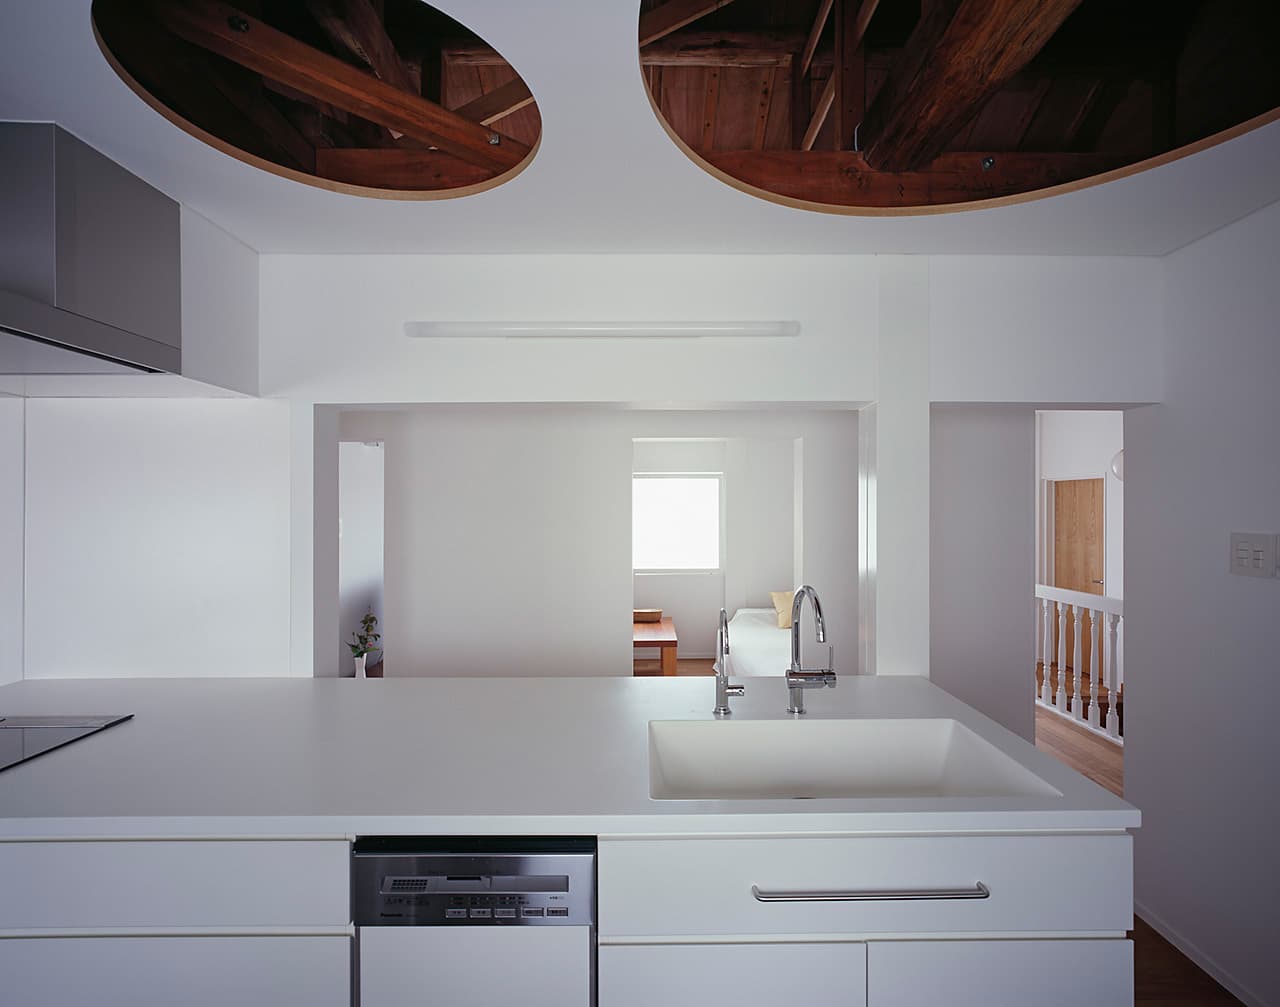 大阪の建築家・中平勝が設計した2世帯住宅のリノベーションの制作キッチン